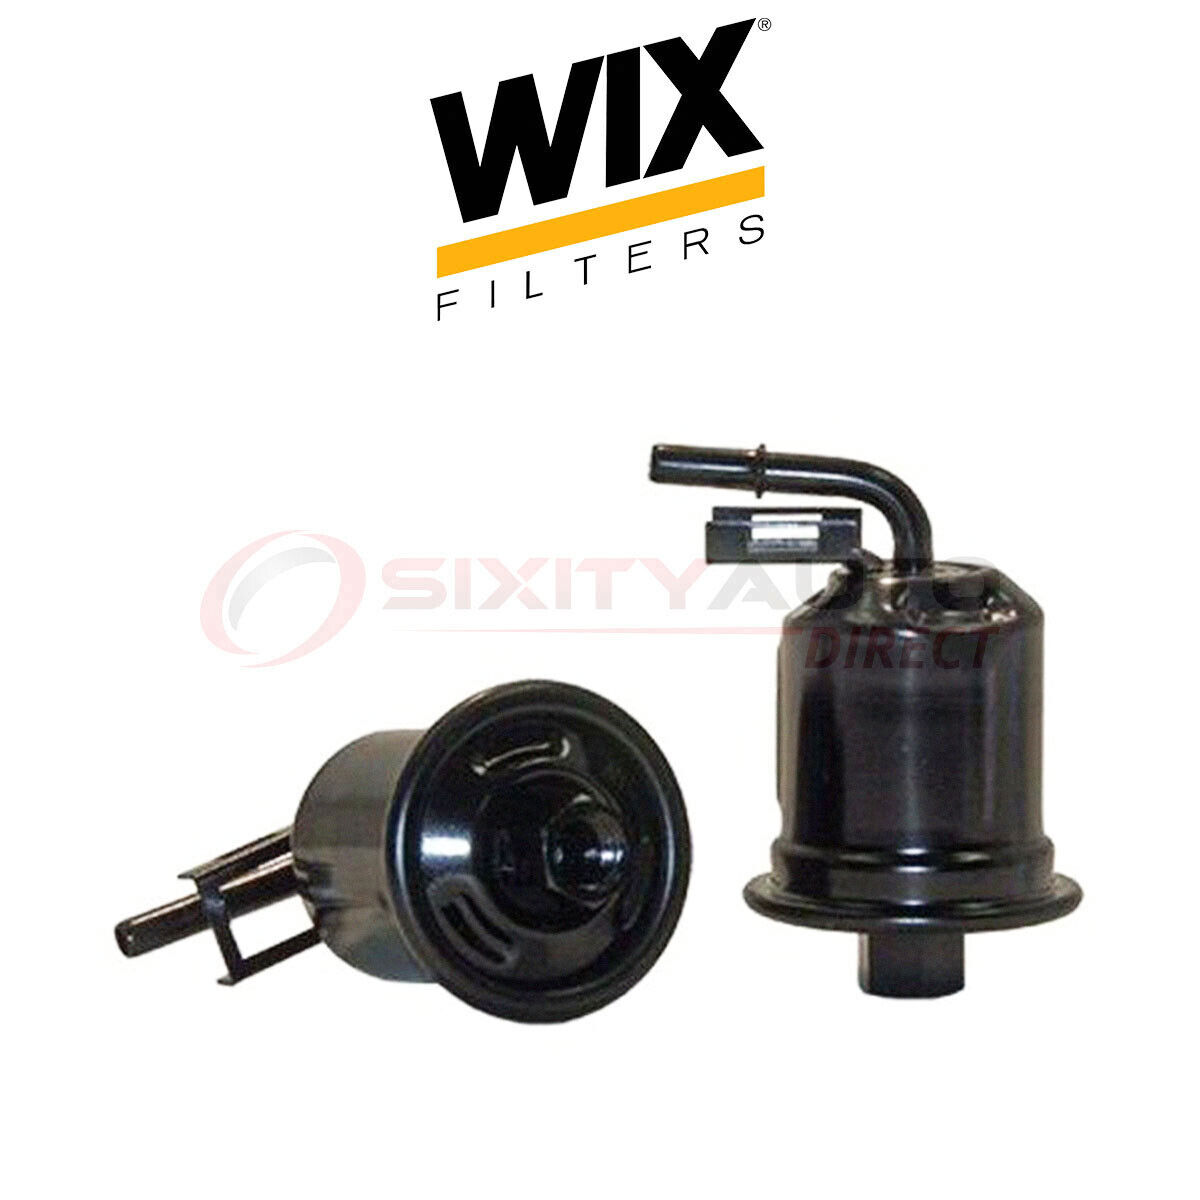 WIX 33581 Fuel Filter for Gas Filtration System bv